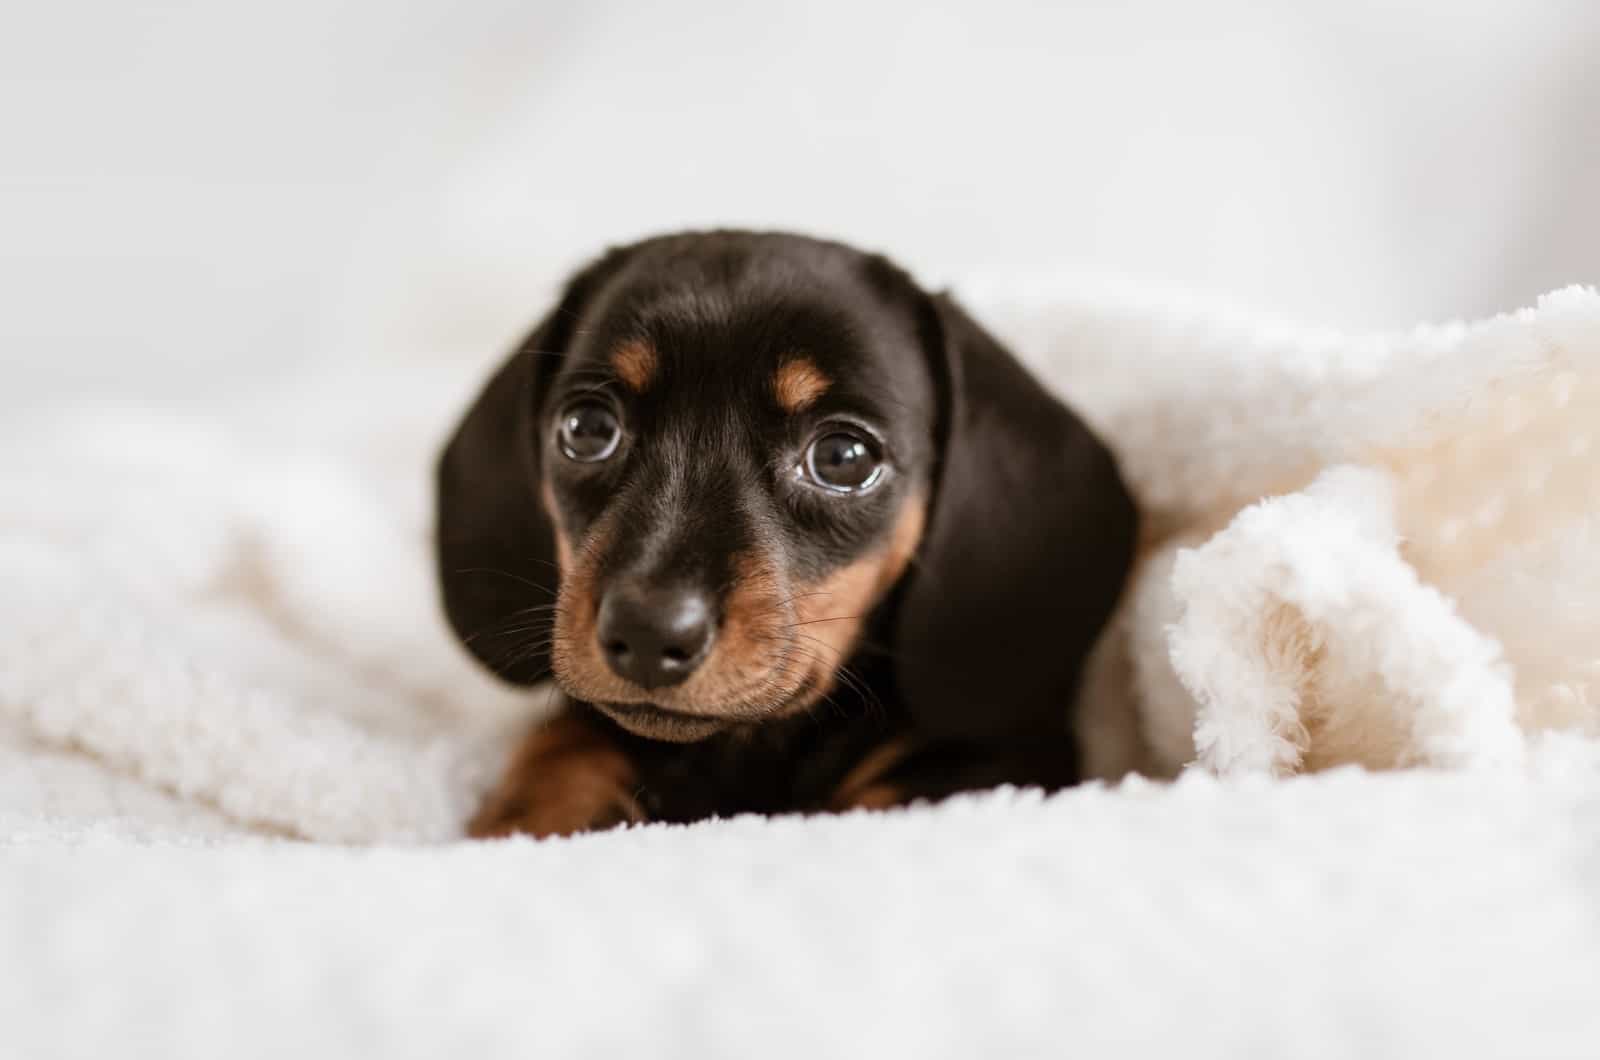 tiny dachshund puppy on a blanket